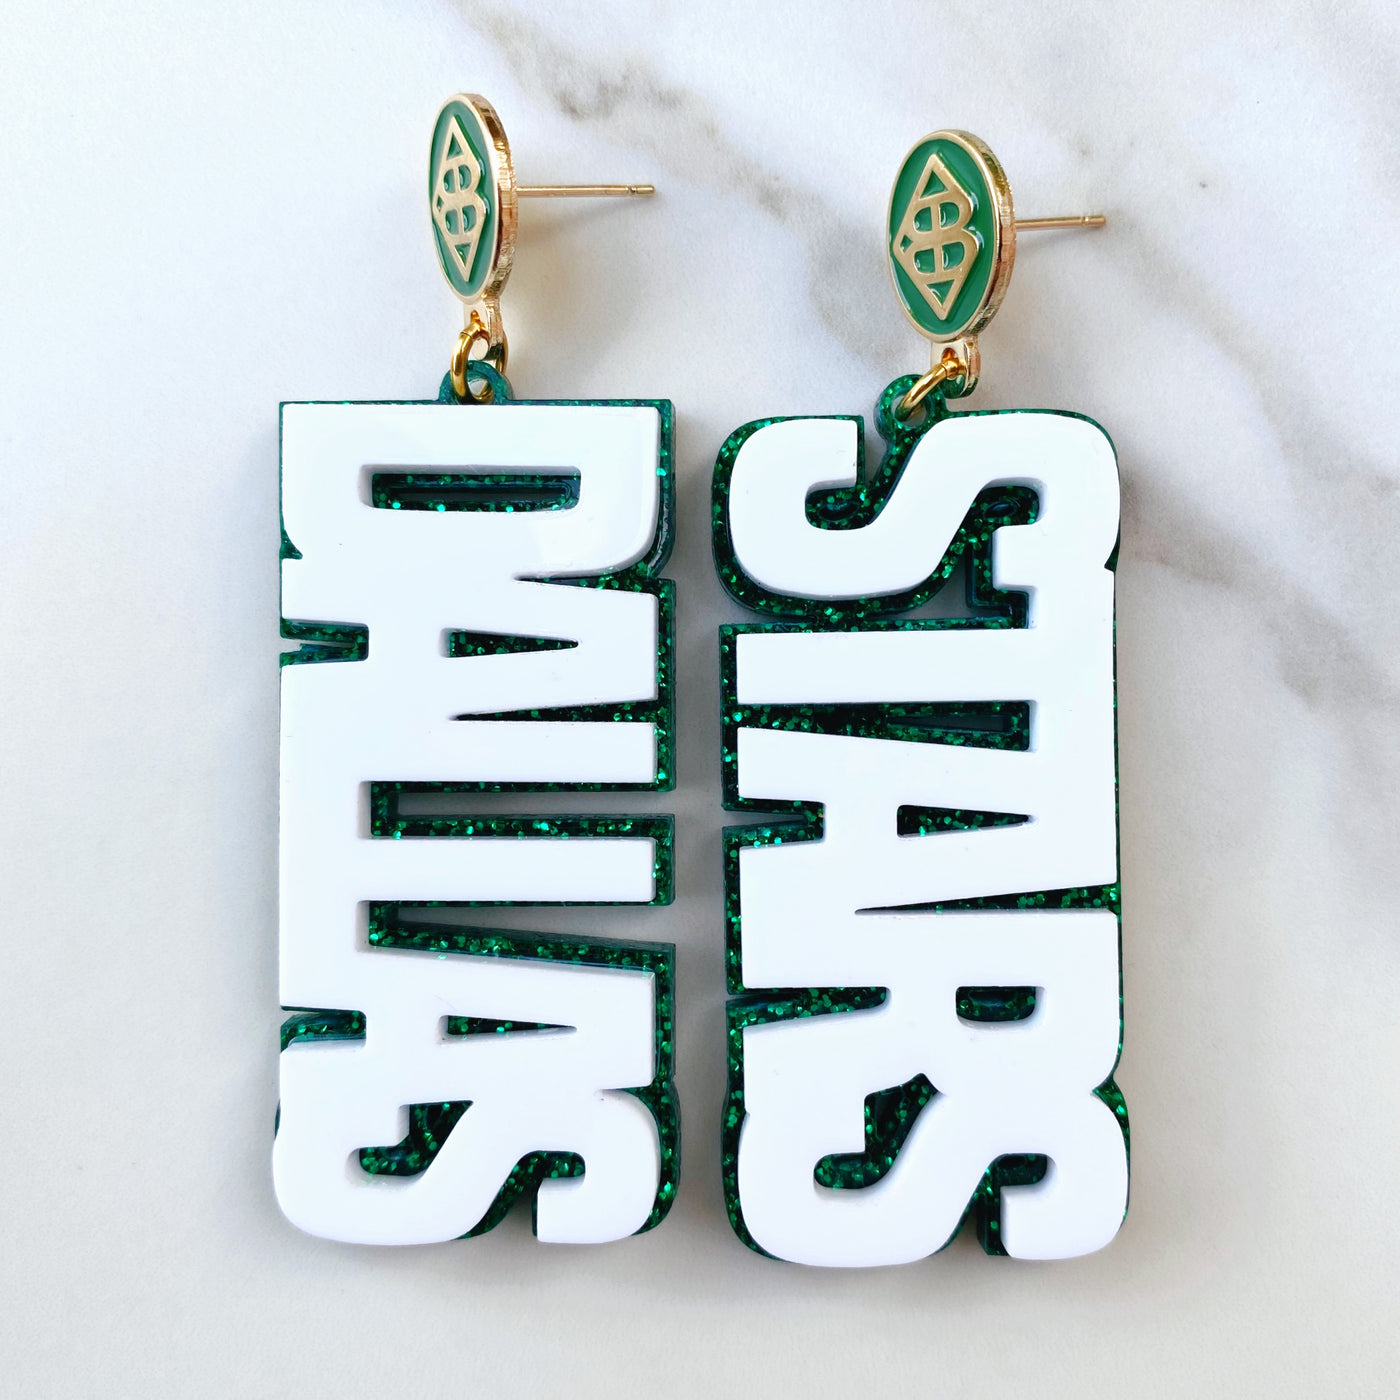 Dallas Stars - White DALLAS STARS over Green Glitter with Green Logo Top